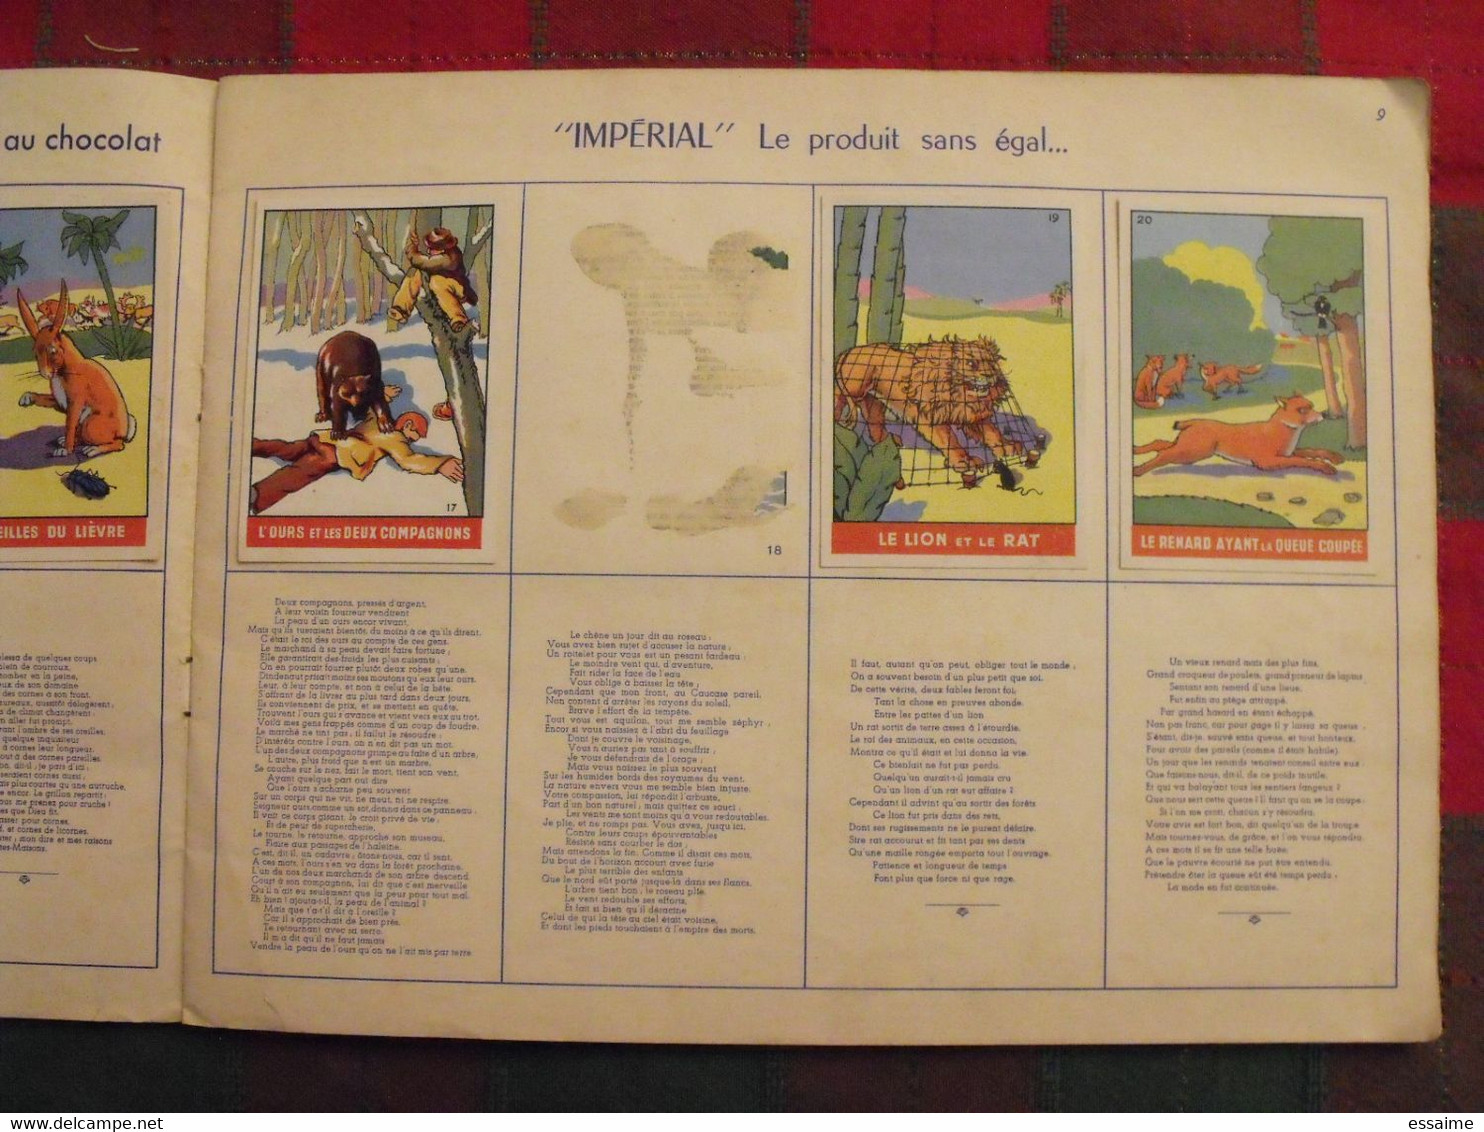 album d'images Fables de La Fontaine. flan entremets Impérial. contient 76/96 images. vers 1960. lot 5